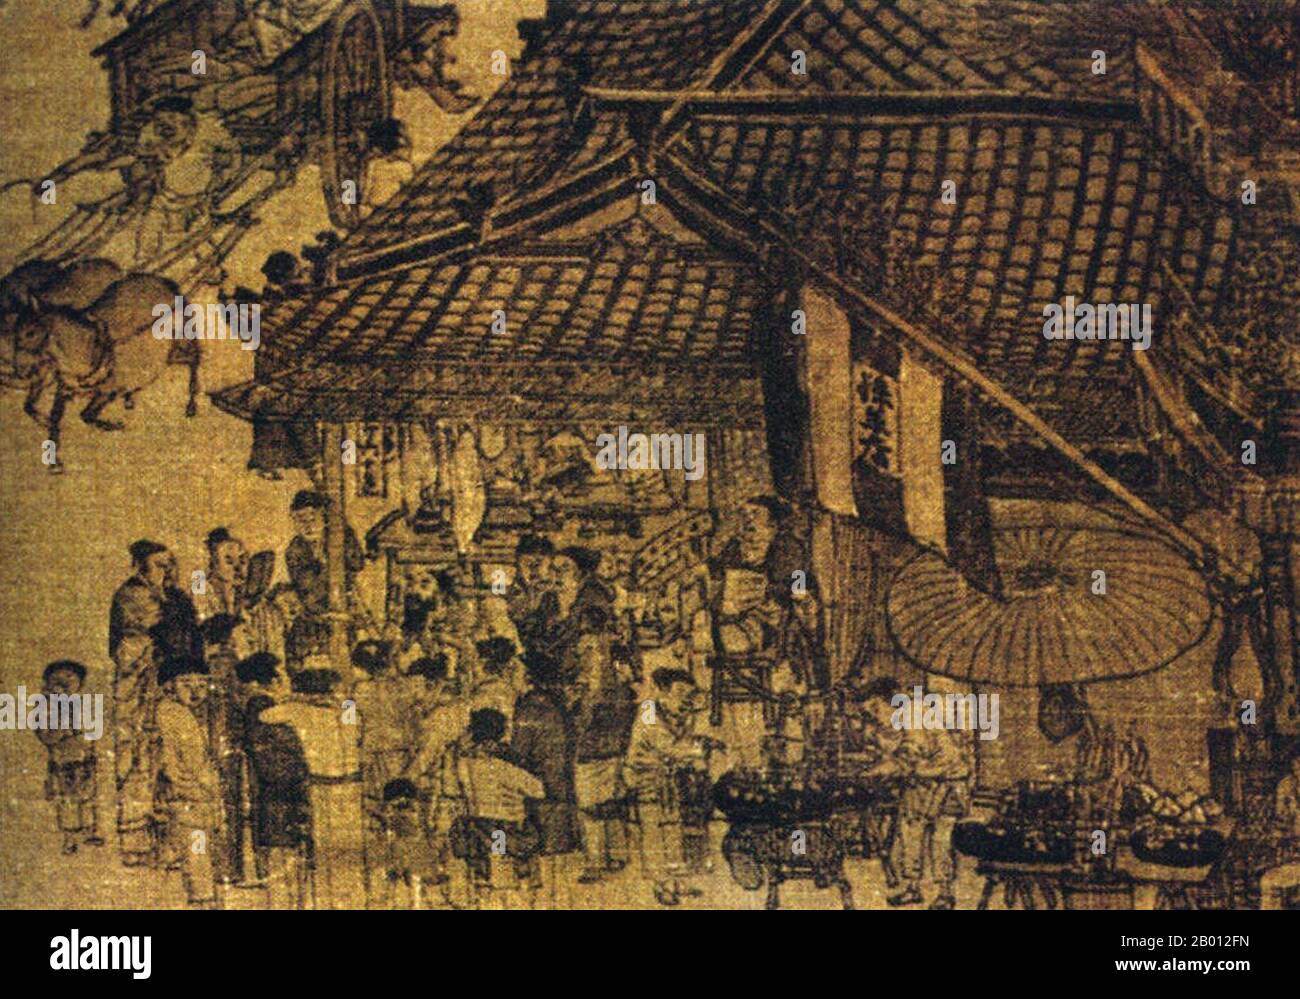 China: „entlang des Flusses während des Qingming-Festes“. Detail eines Seidenbildes von Zhang Zeduan (1085-1145), 12. Jahrhundert. Zhang Zeduan (1085-1145), Höflichkeitsname Zheng Dao, war ein Maler der Song-Dynastie und lebte während der Übergangsperiode vom nördlichen Song zum südlichen Song. Er war eine bedeutende Persönlichkeit in der frühen Geschichte der chinesischen Kunst, die maßgeblich an der Entwicklung des Landschaftskunststils shan Shui beteiligt war. Seine Bilder verhalfen ihm, viel über das Leben in China im 11. Und 12. Jahrhundert zu erzählen. Stockfoto